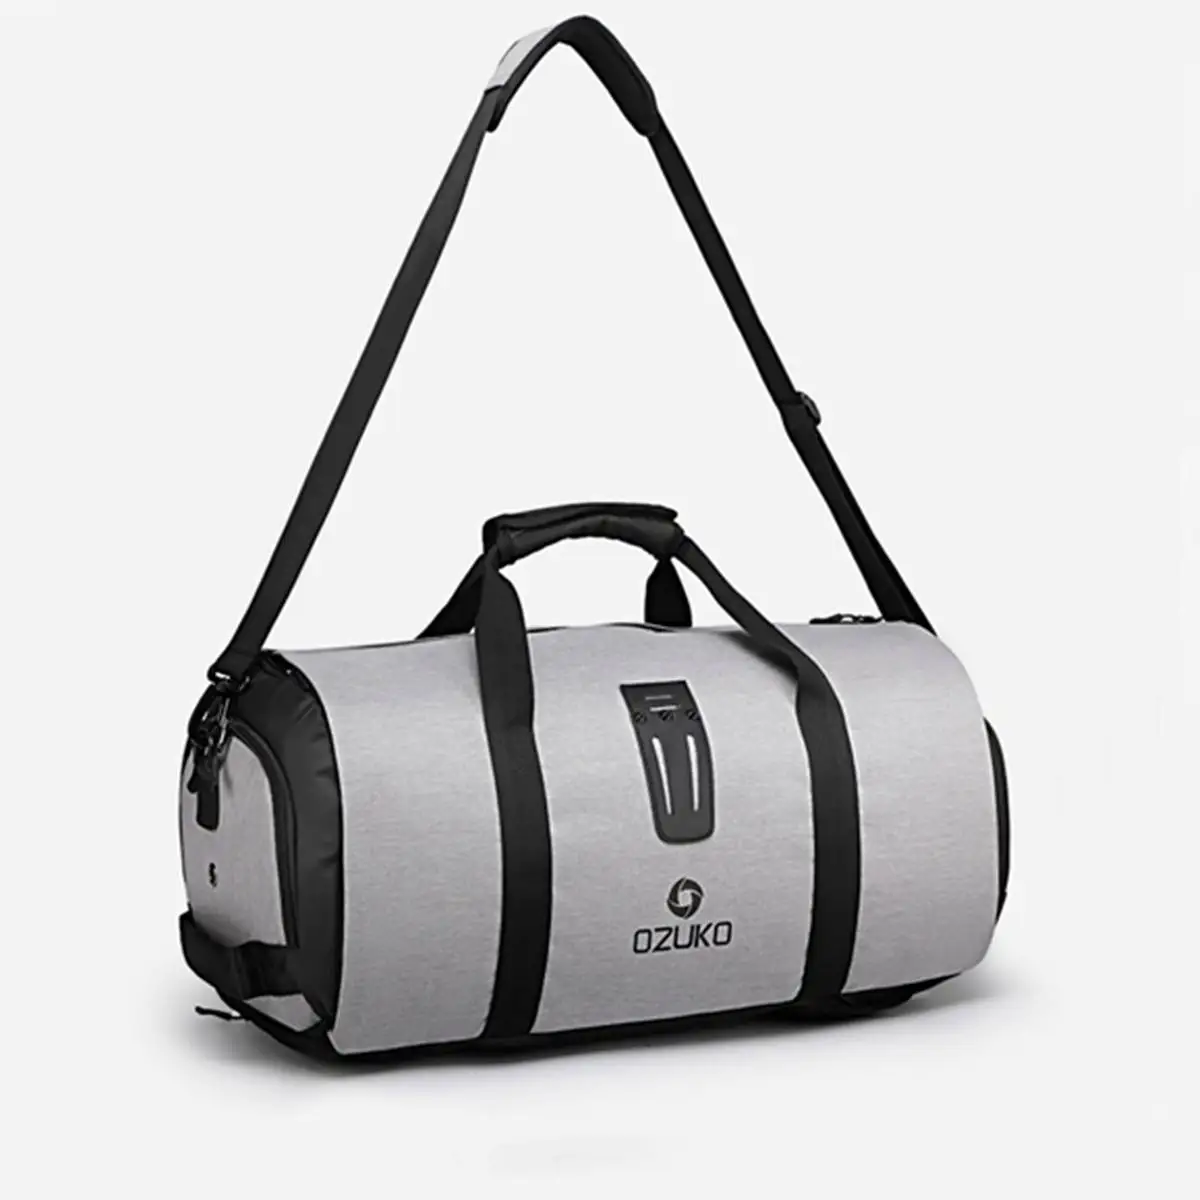 2 в 1 дорожная сумка мужская одежда сумки женские водонепроницаемые дорожные сумки Большая поклажа сумка для вещей, сумка прямоугольной формы, ручная сумка для отдыха